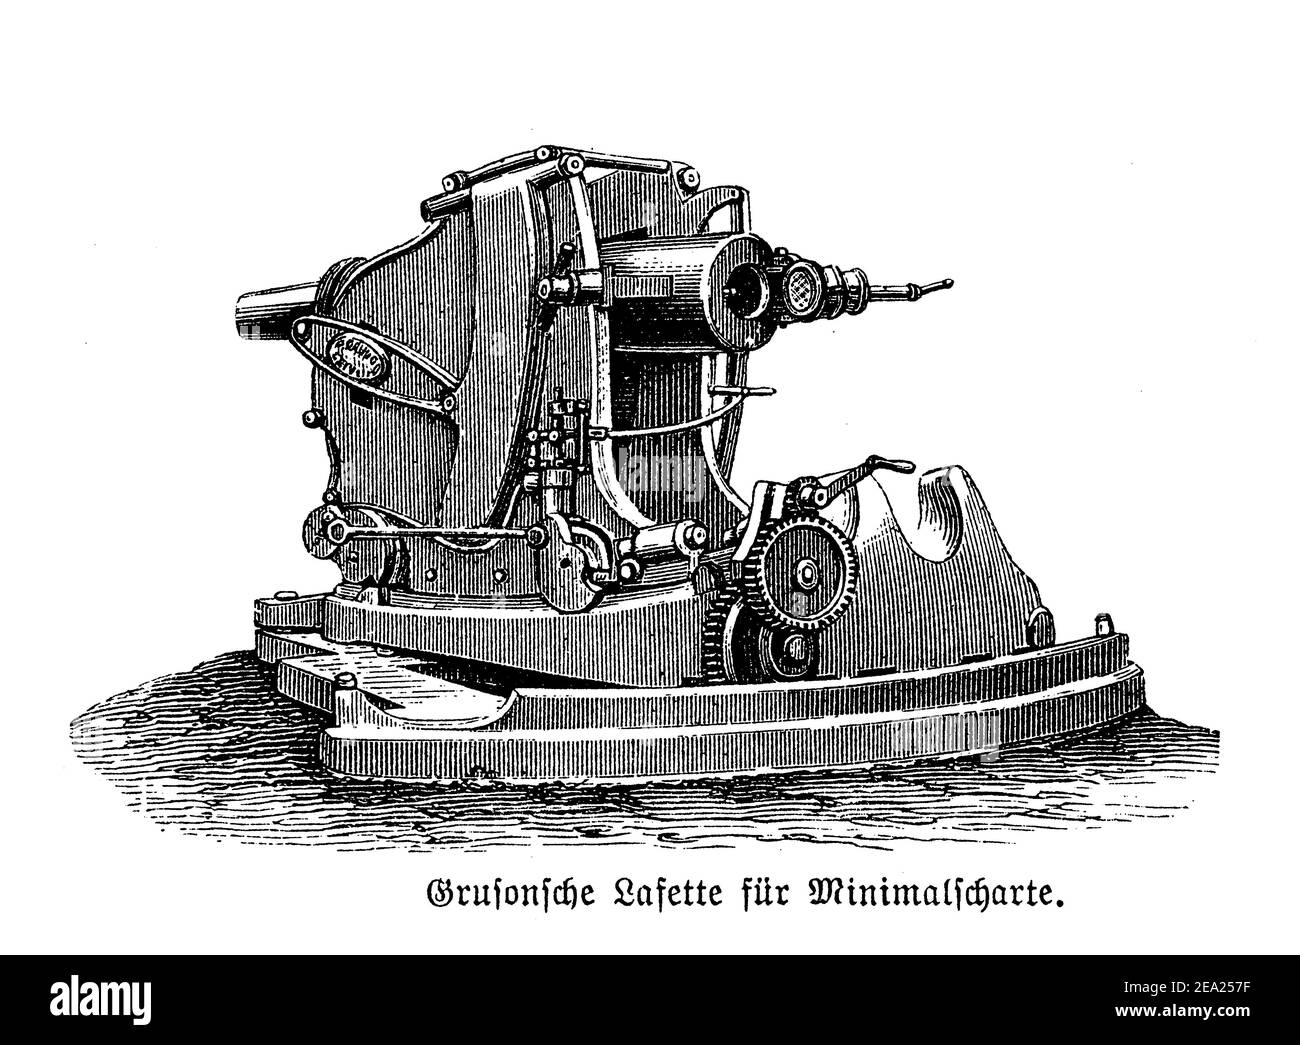 Pistola a revolver Gruson montata su ruote, carrello per cassemate attinente per la difesa a distanza ravvicinata, fine 19 ° secolo Foto Stock